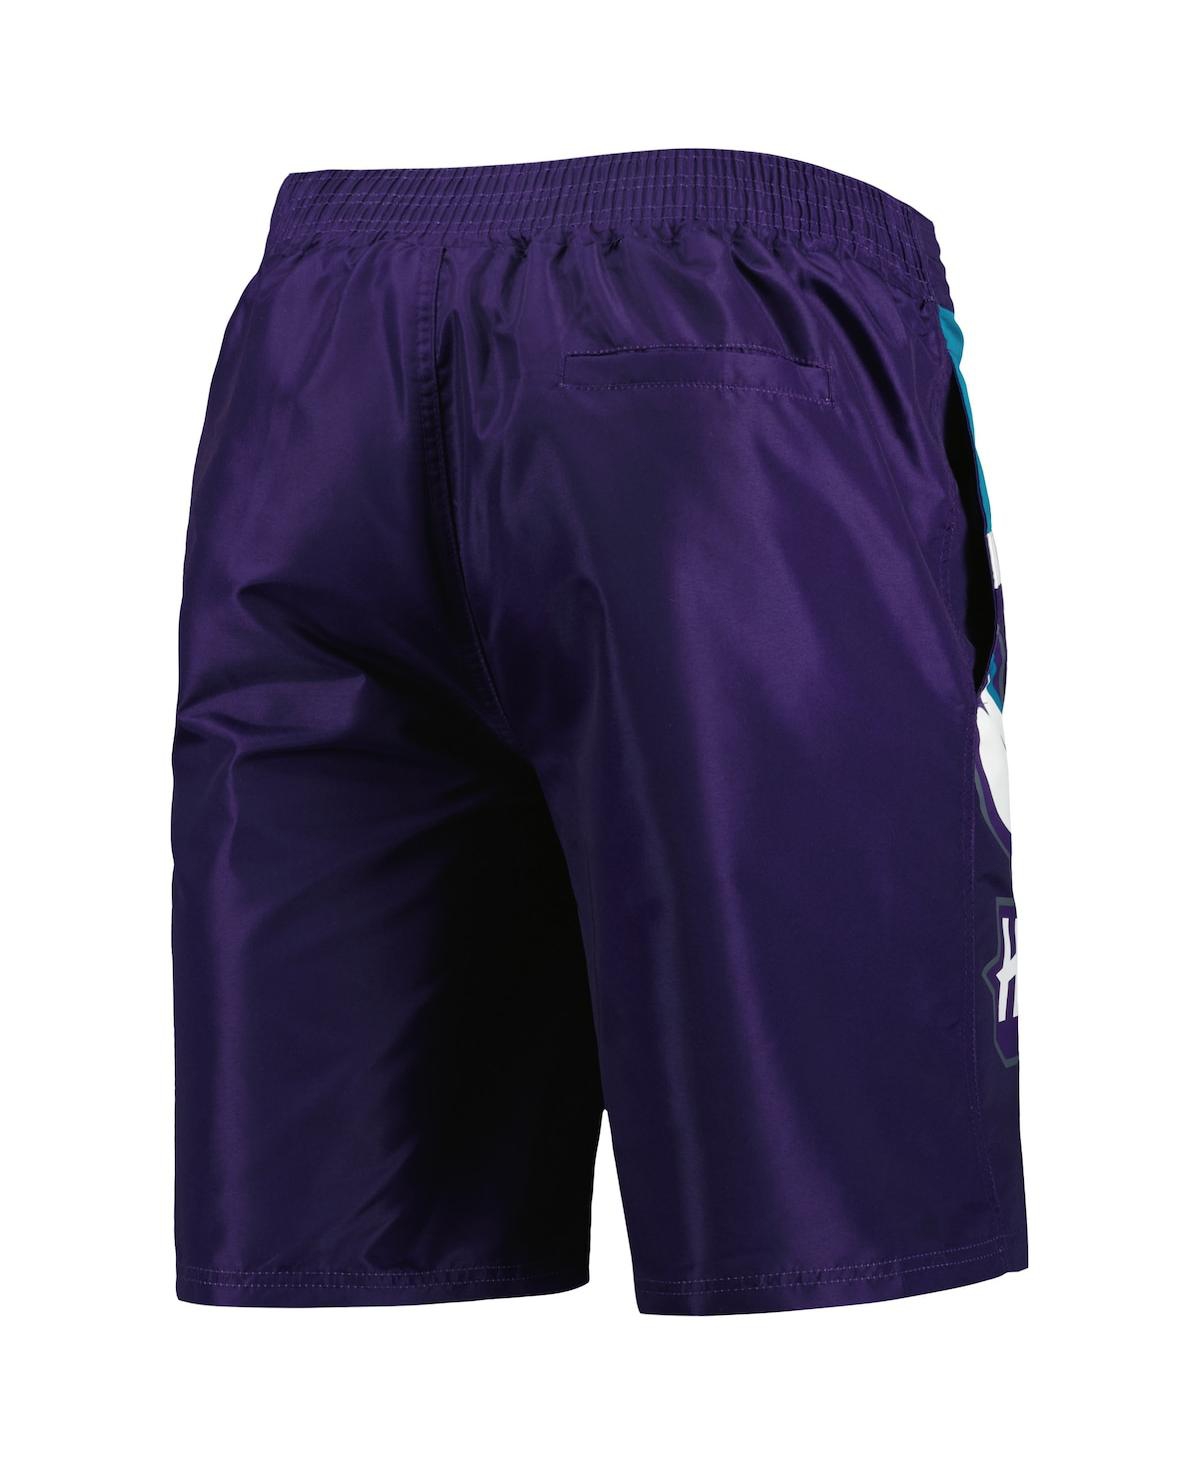 Shop G-iii Sports By Carl Banks Men's  Purple Charlotte Hornets Sea Wind Swim Trunks